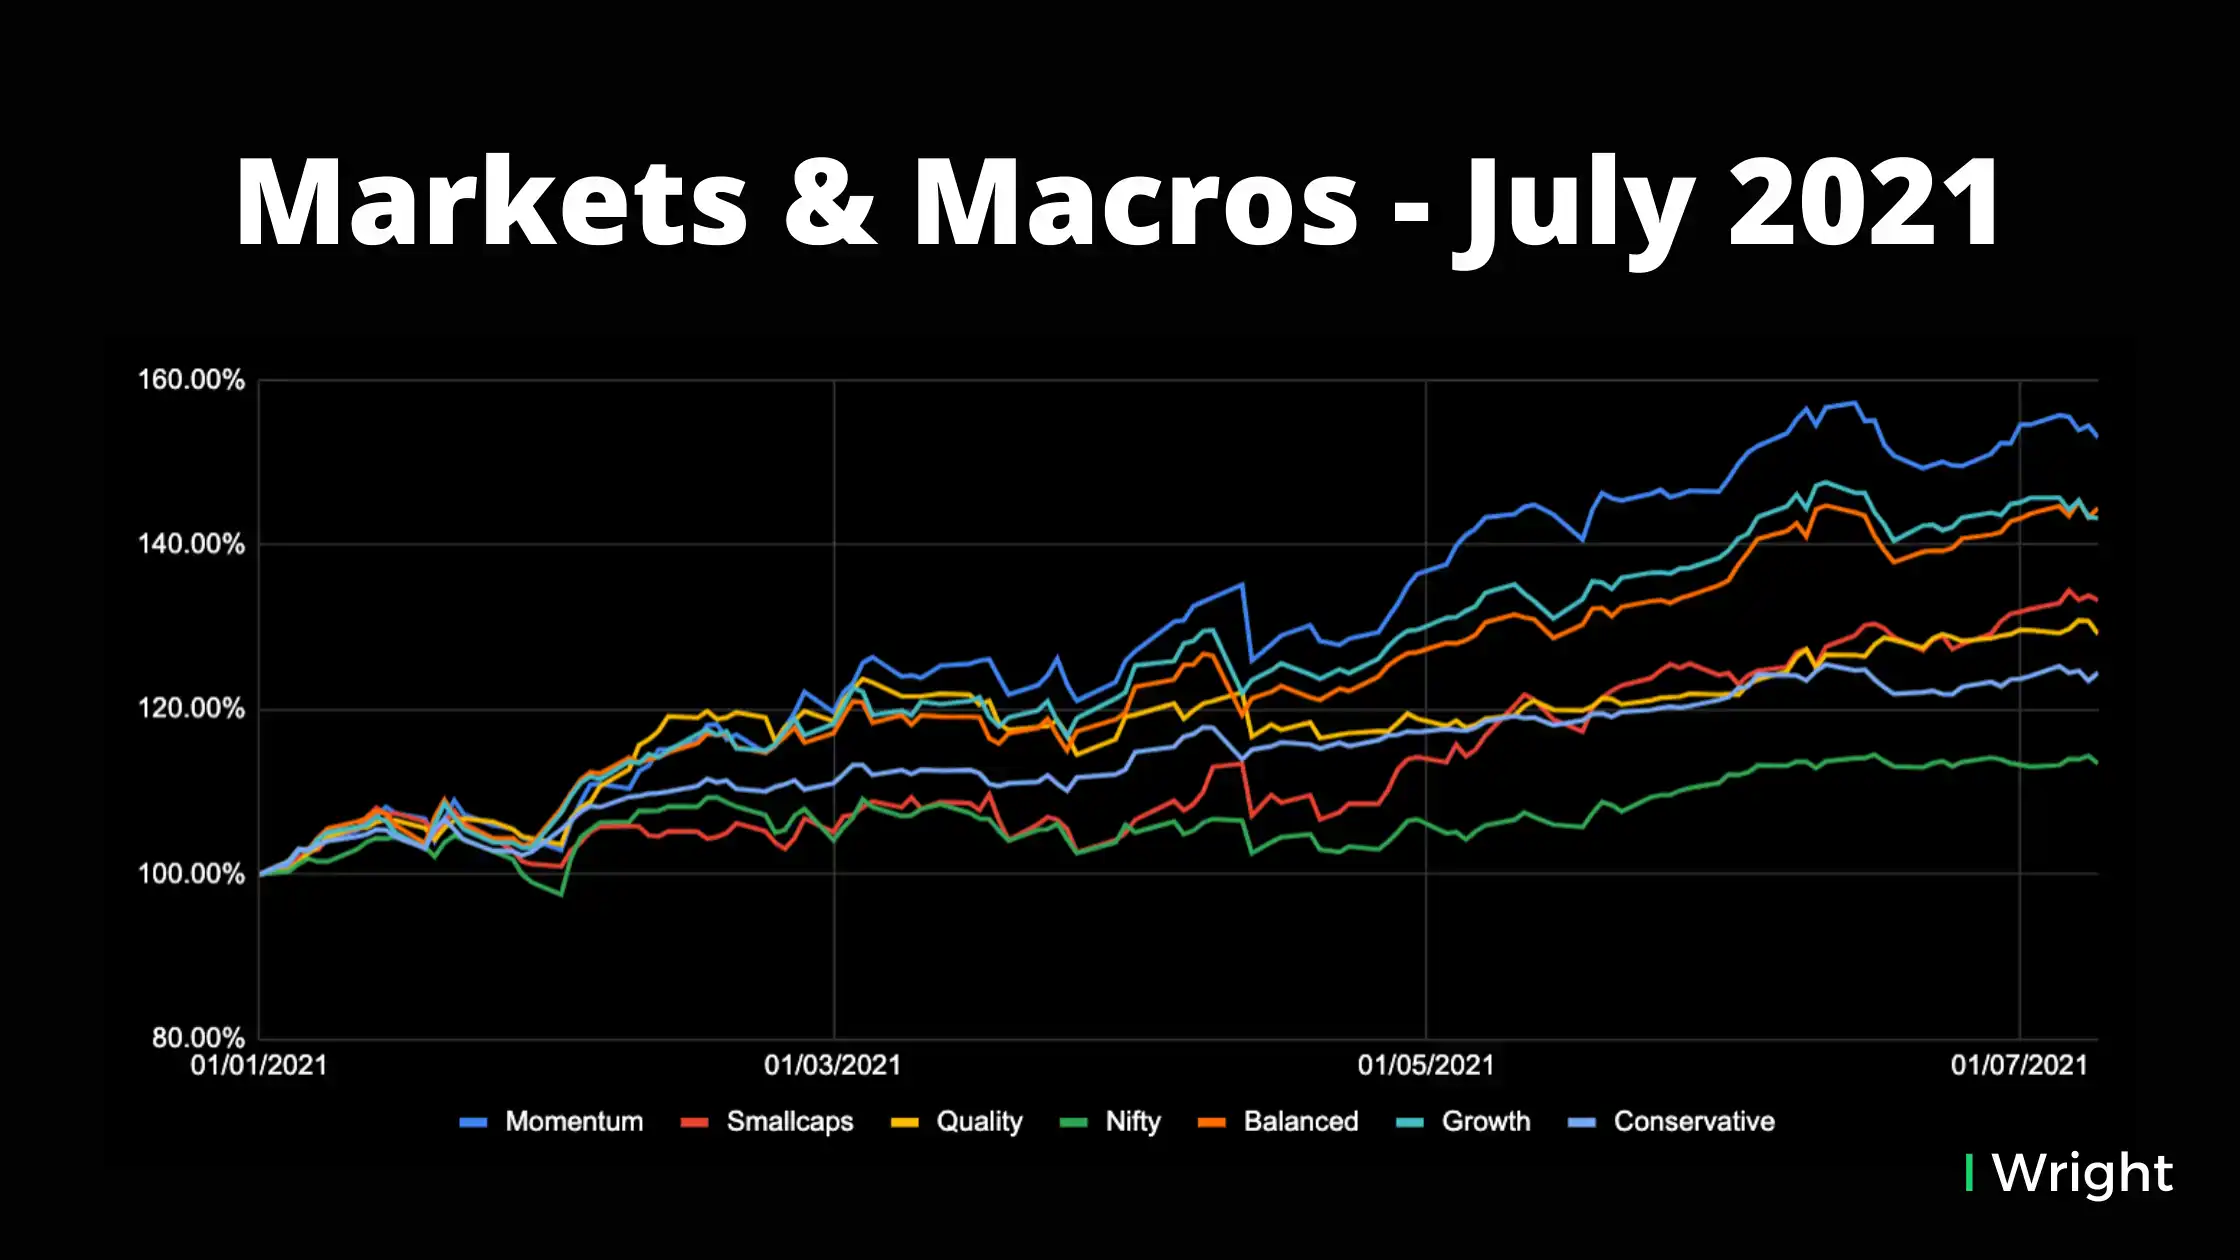 Markets & Macros - July 2021